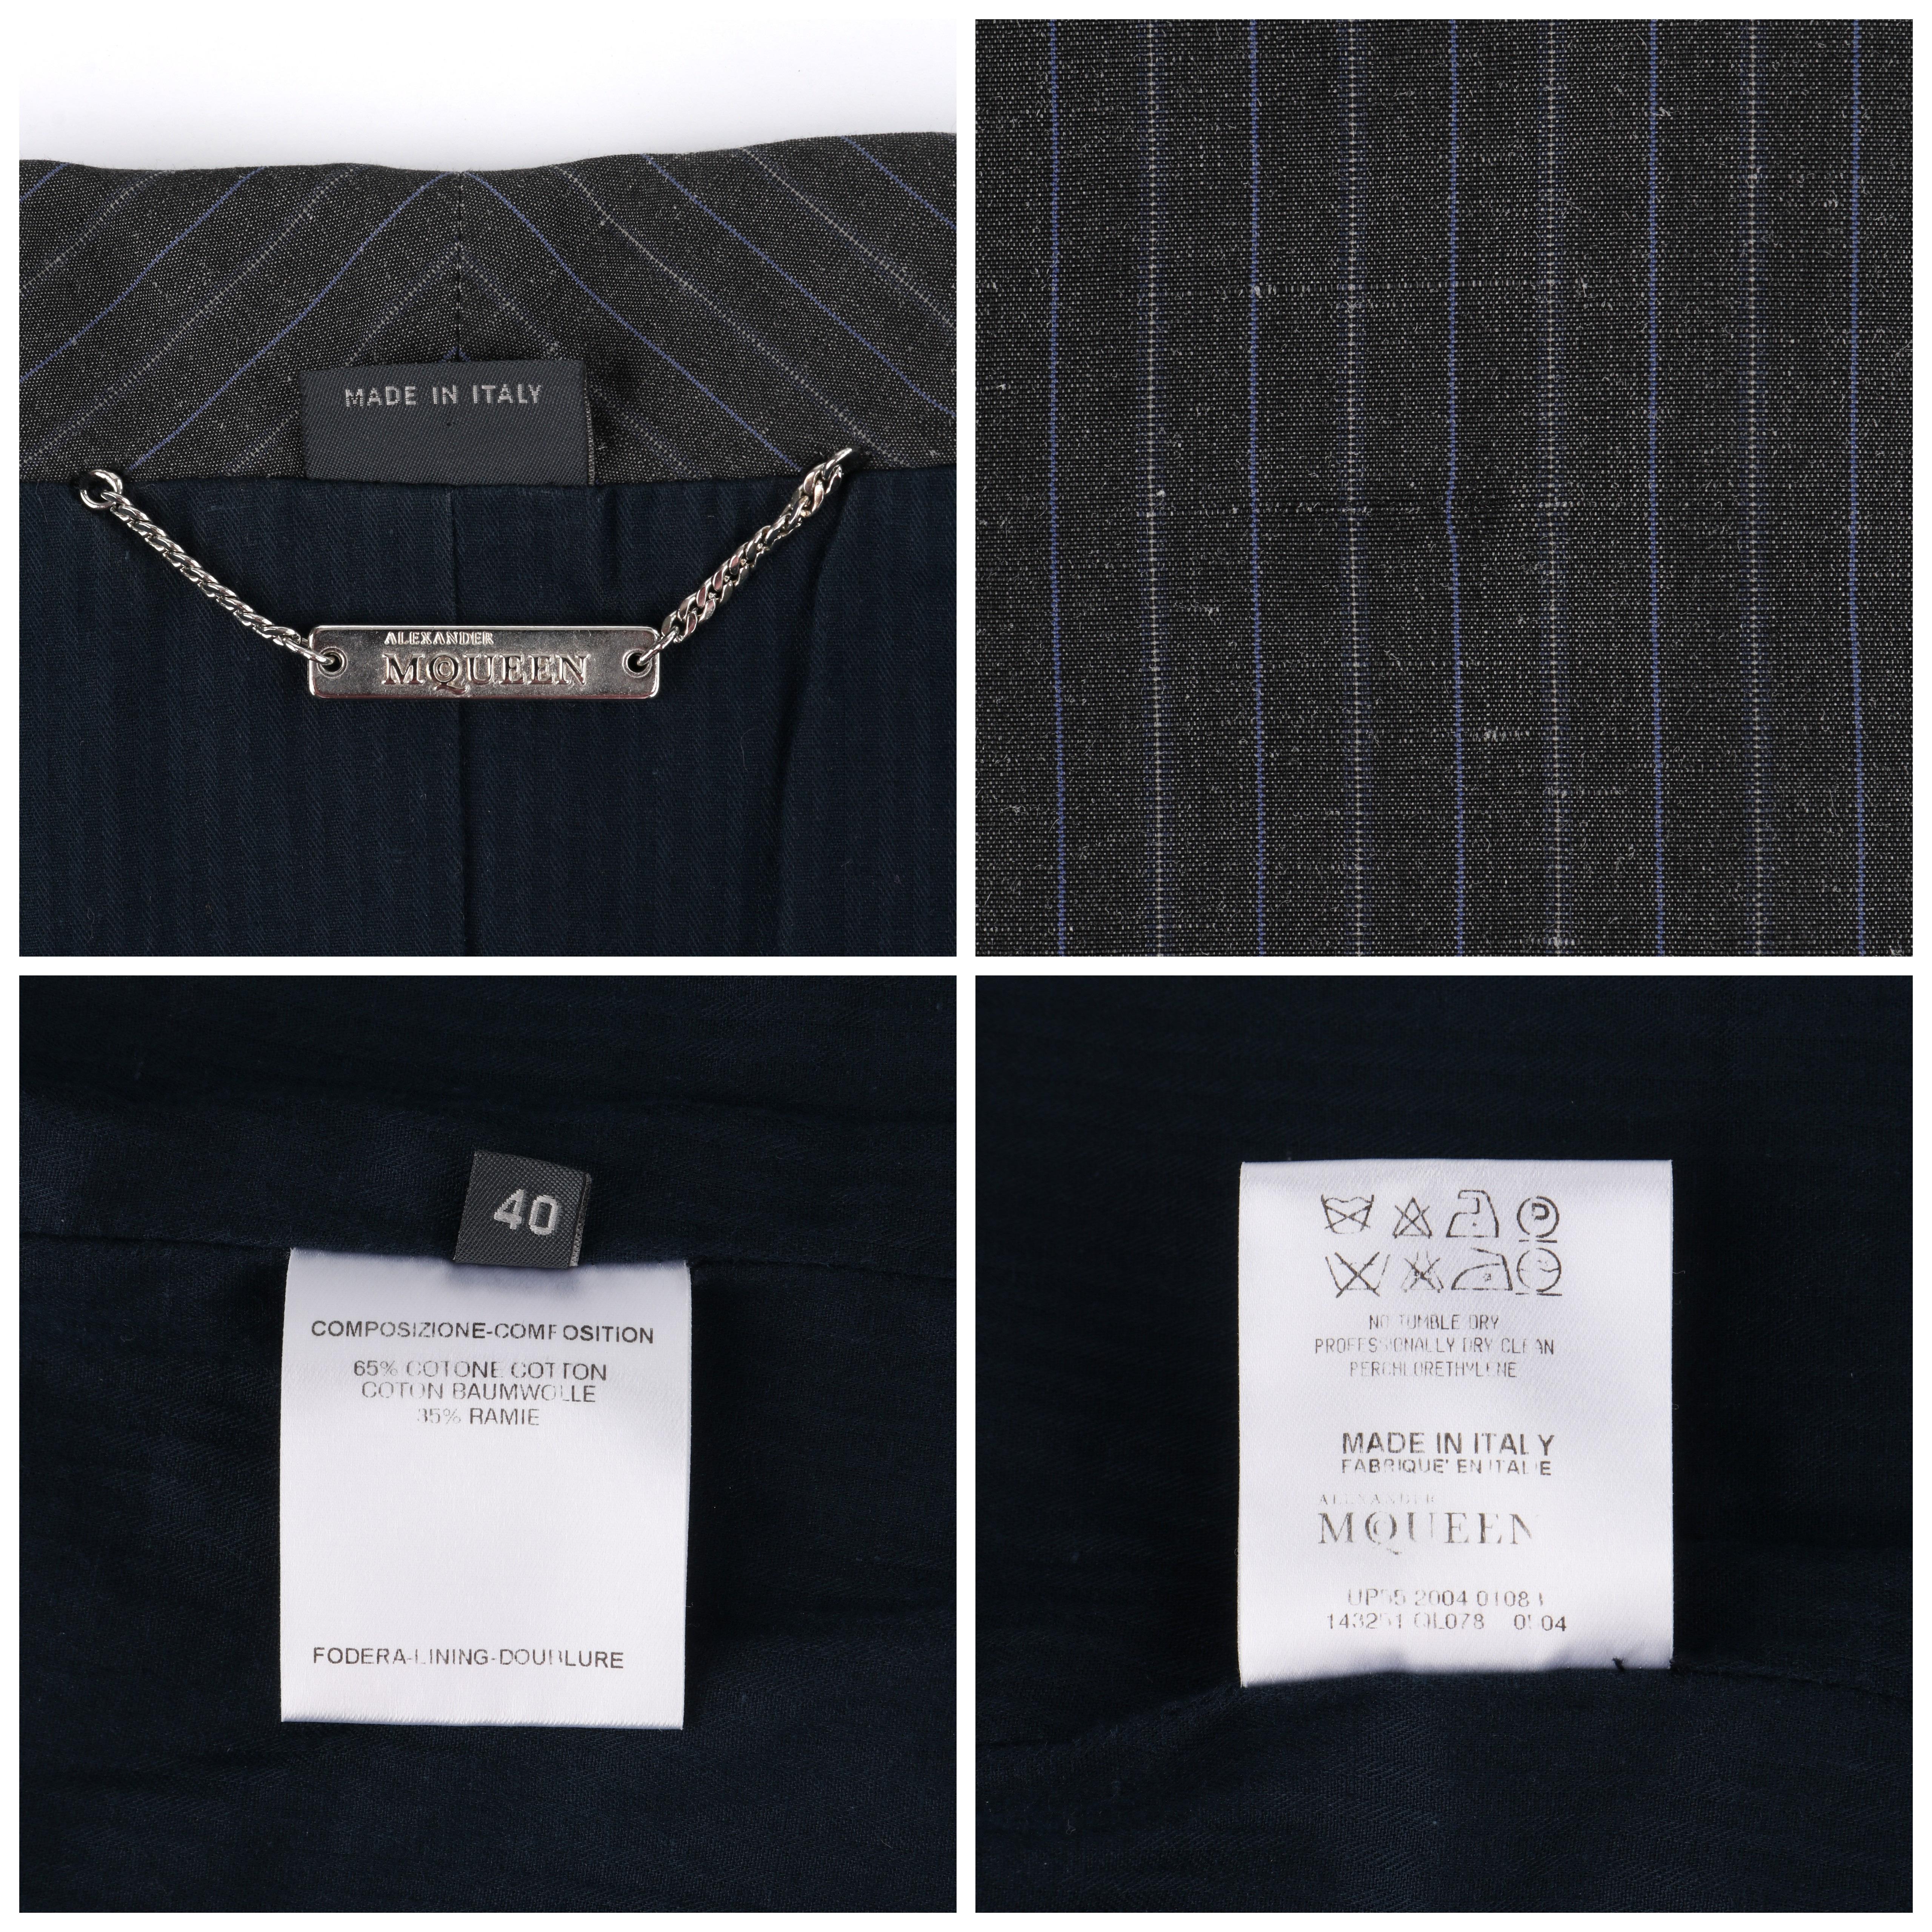 ALEXANDER McQUEEN S/S 2005 Grey Pinstripe Sailor Blazer Jacket Shawl Collar  For Sale 4